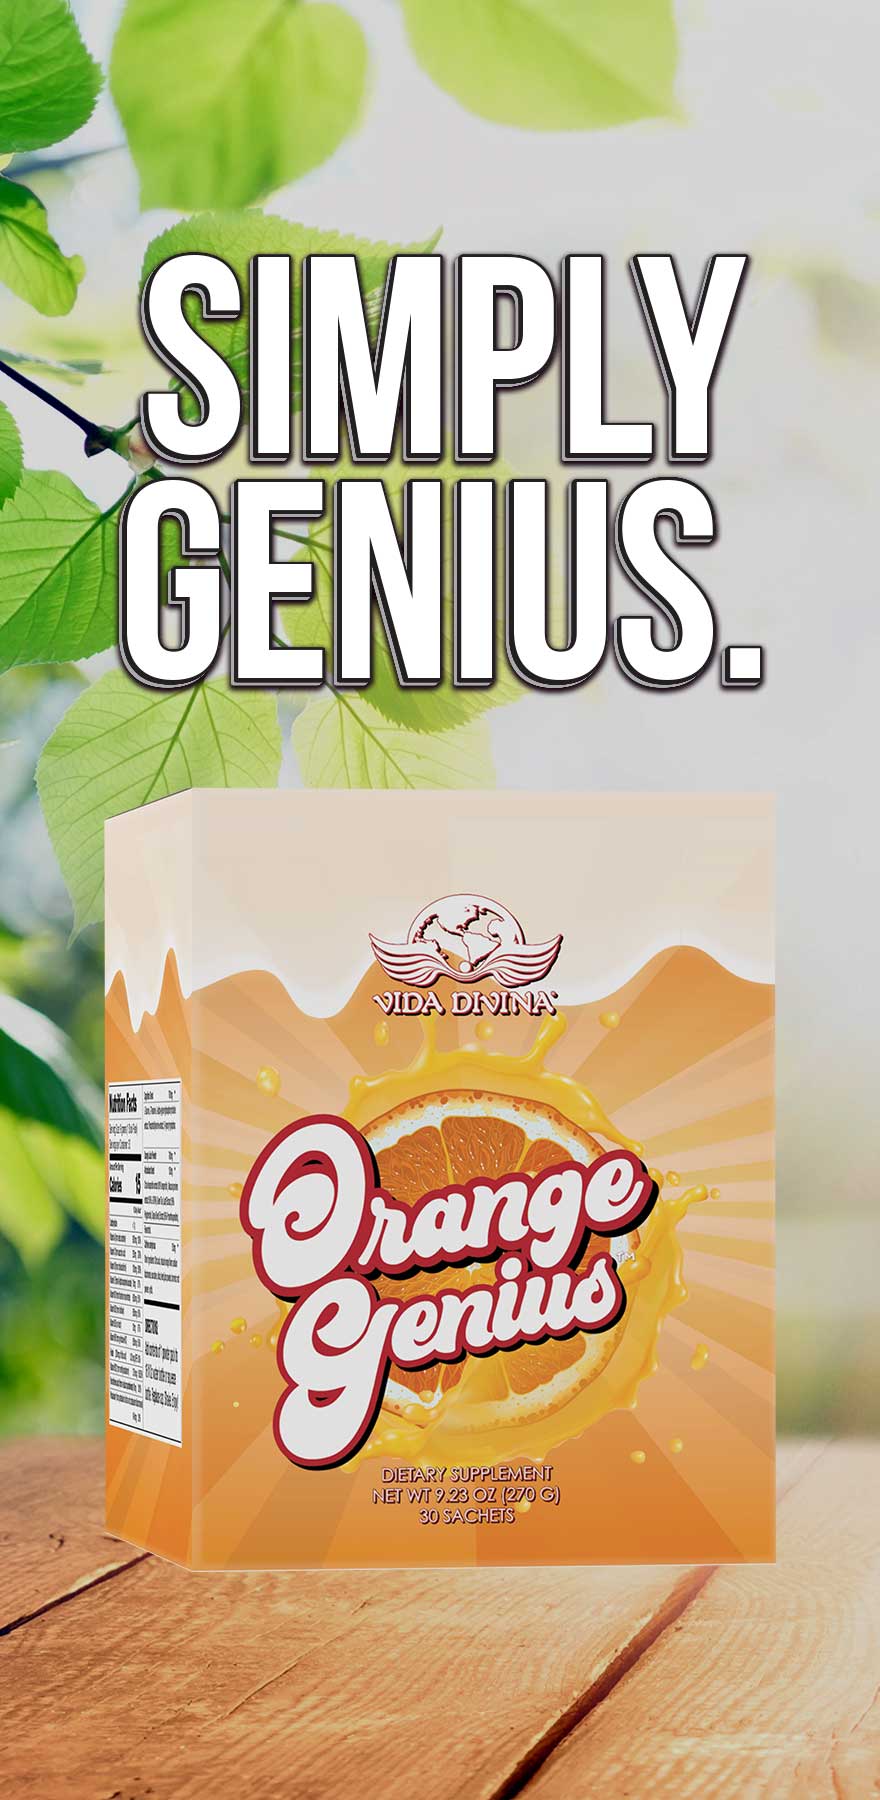 Orange Genius